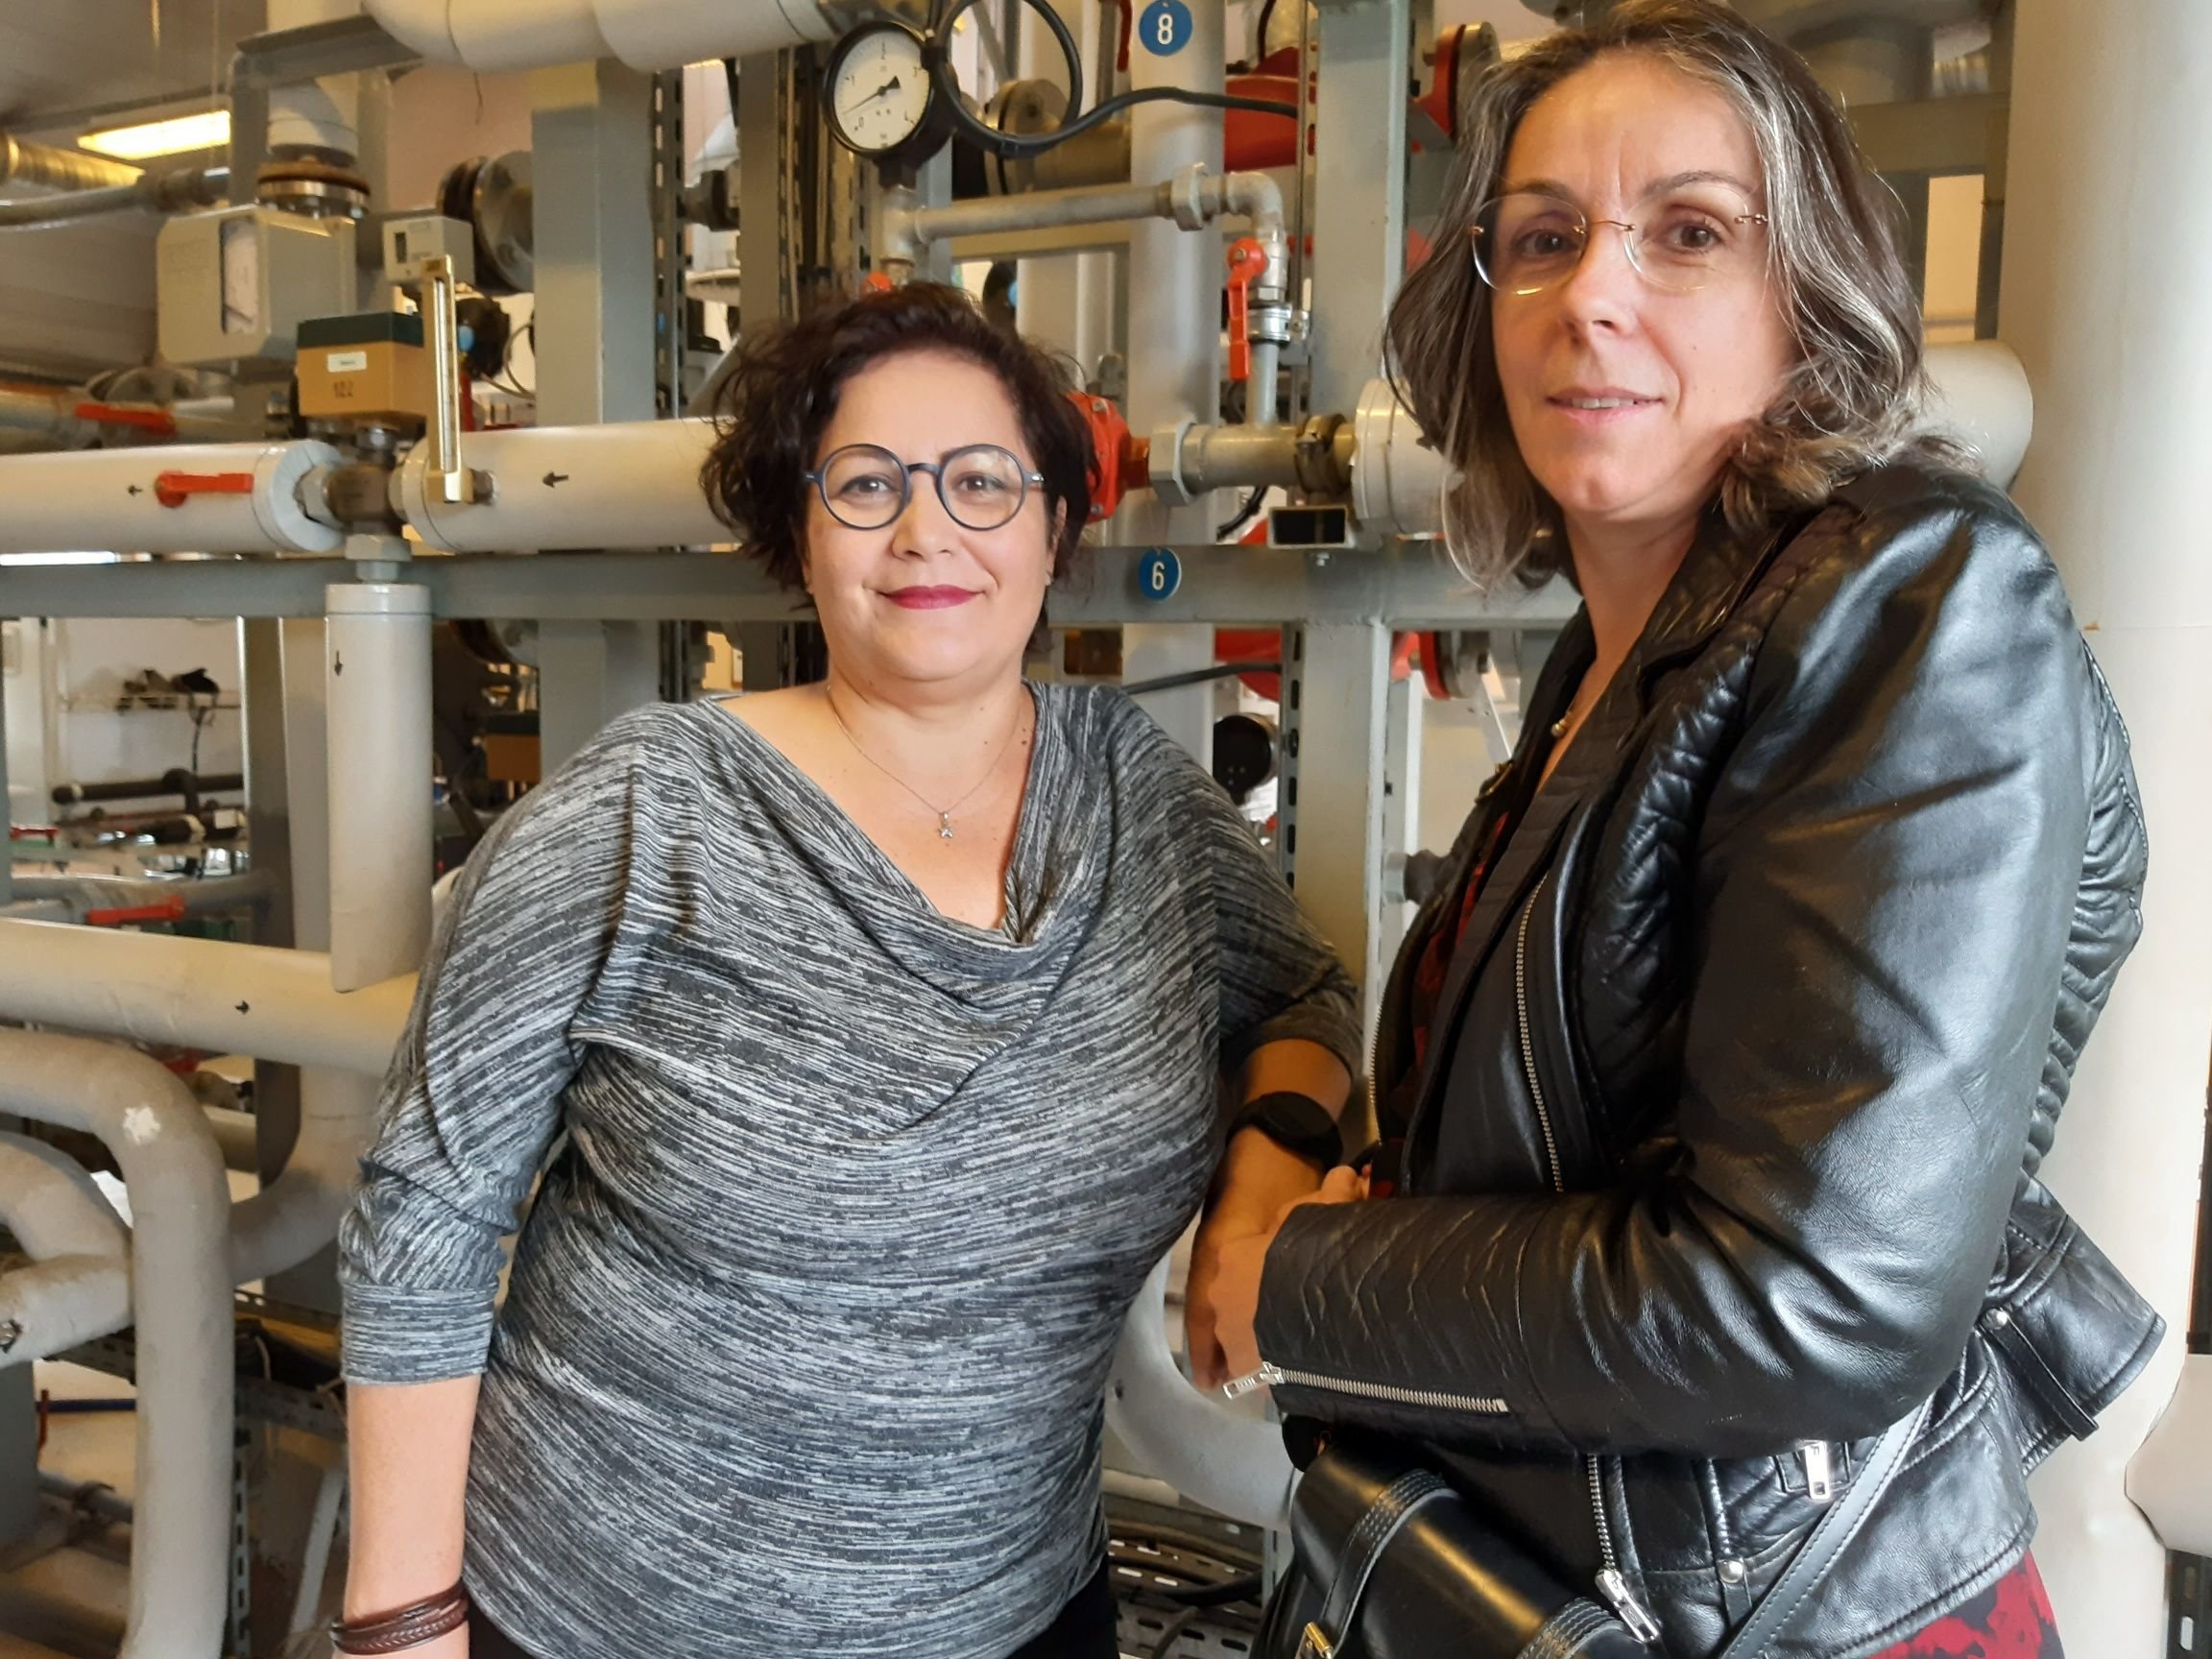 Taverny (Val-d'Oise), le 9 septembre 2022. Christiane Belhandouz, 48 ans, et Cécile Dupont, 52 ans, sont désormais techniciennes en climatisation, ventilation et chauffage. LP/Christophe Lefèvre